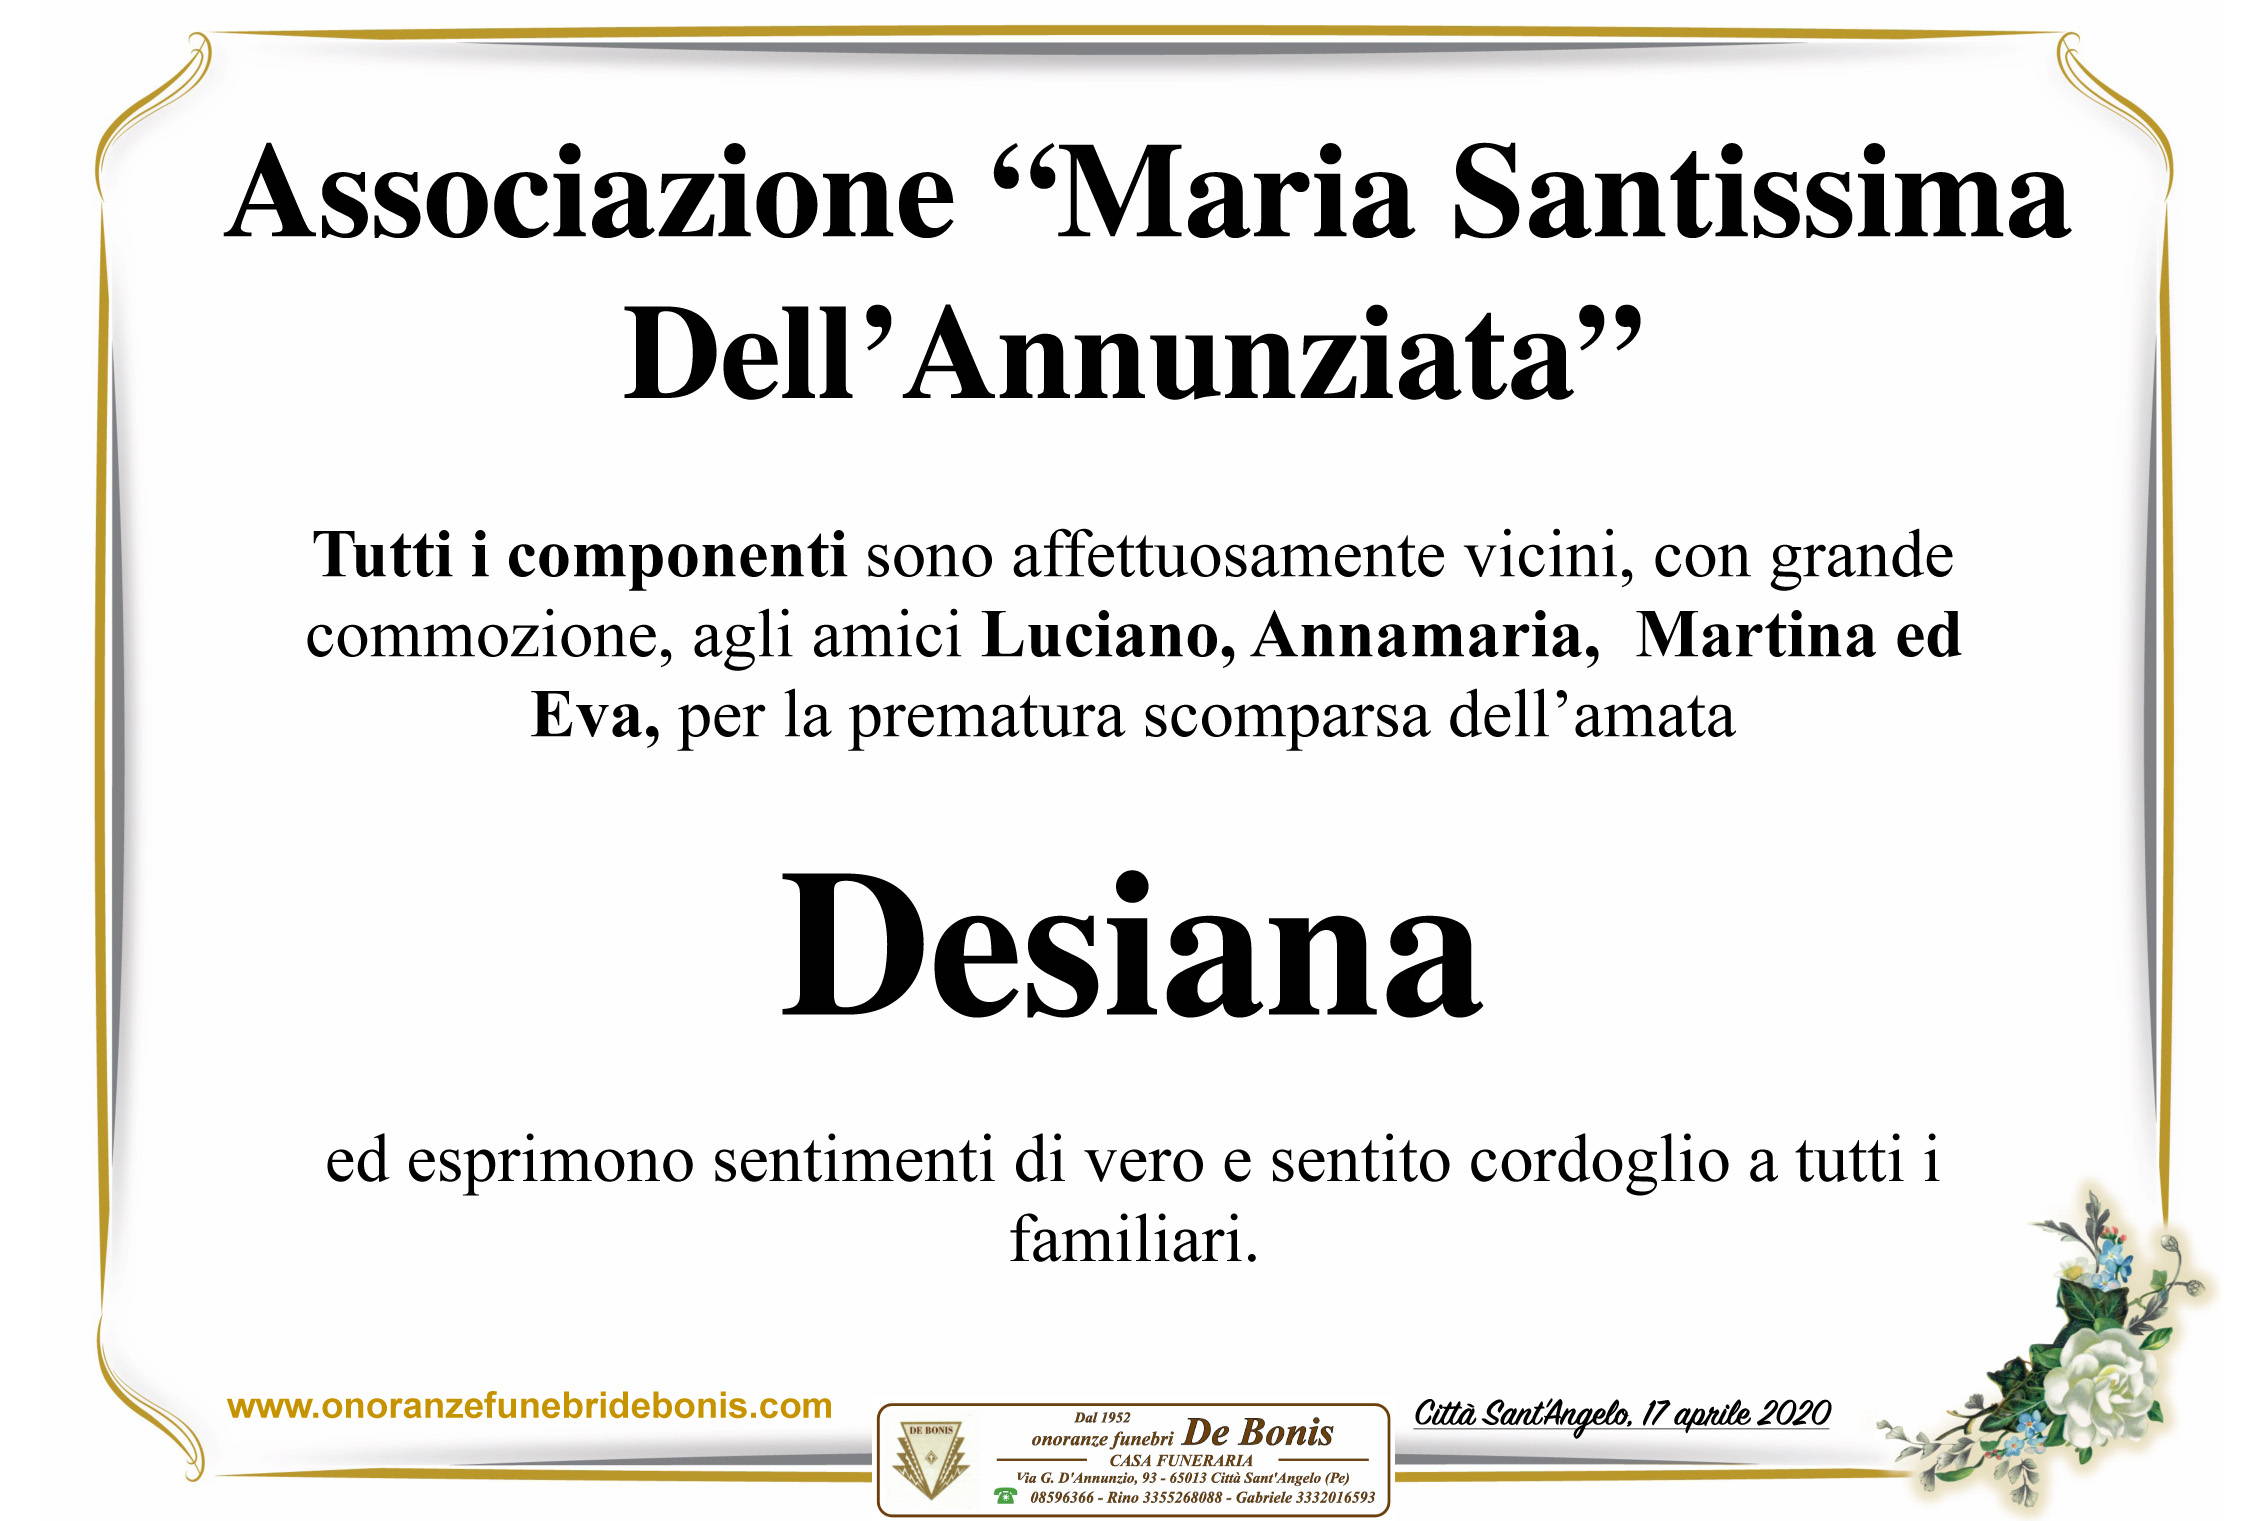 Associazione "Maria Ss. dell'Annunziata"